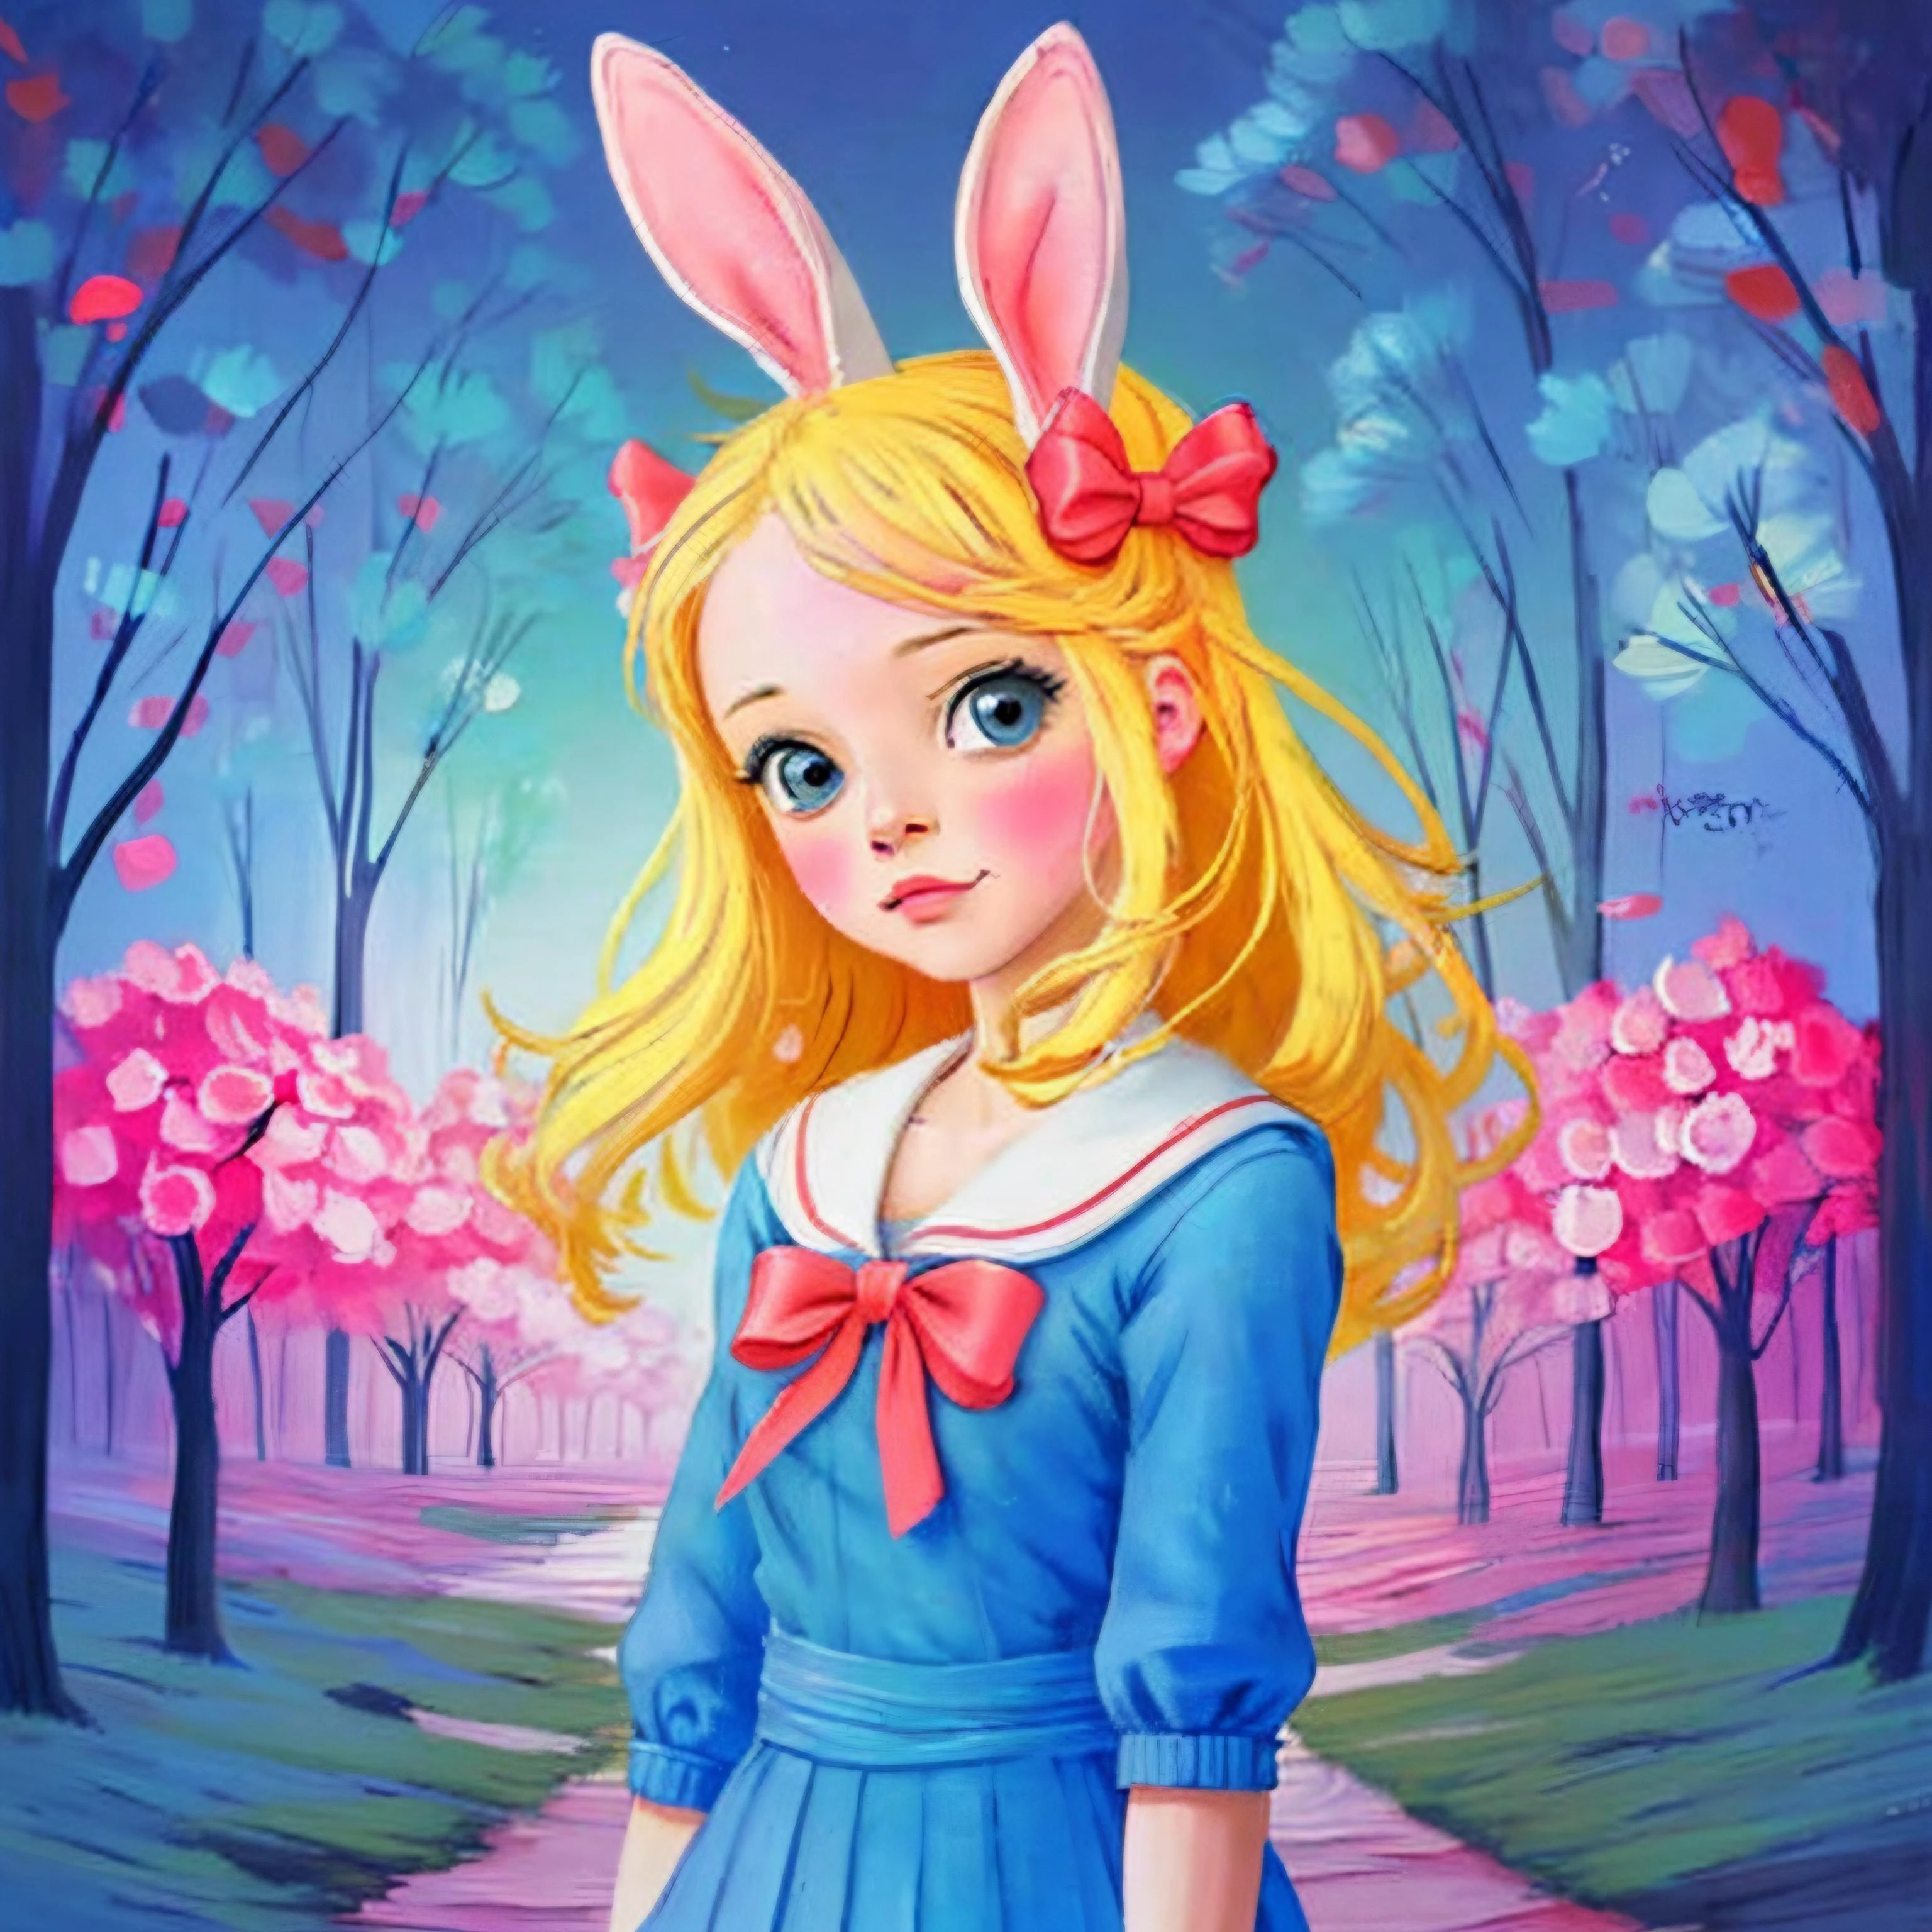 digital artwork, 1girl, anime kawaii, blonde school girl with bunny ears, celestial, cute, adorable, whimsical, contour, mysterious,  